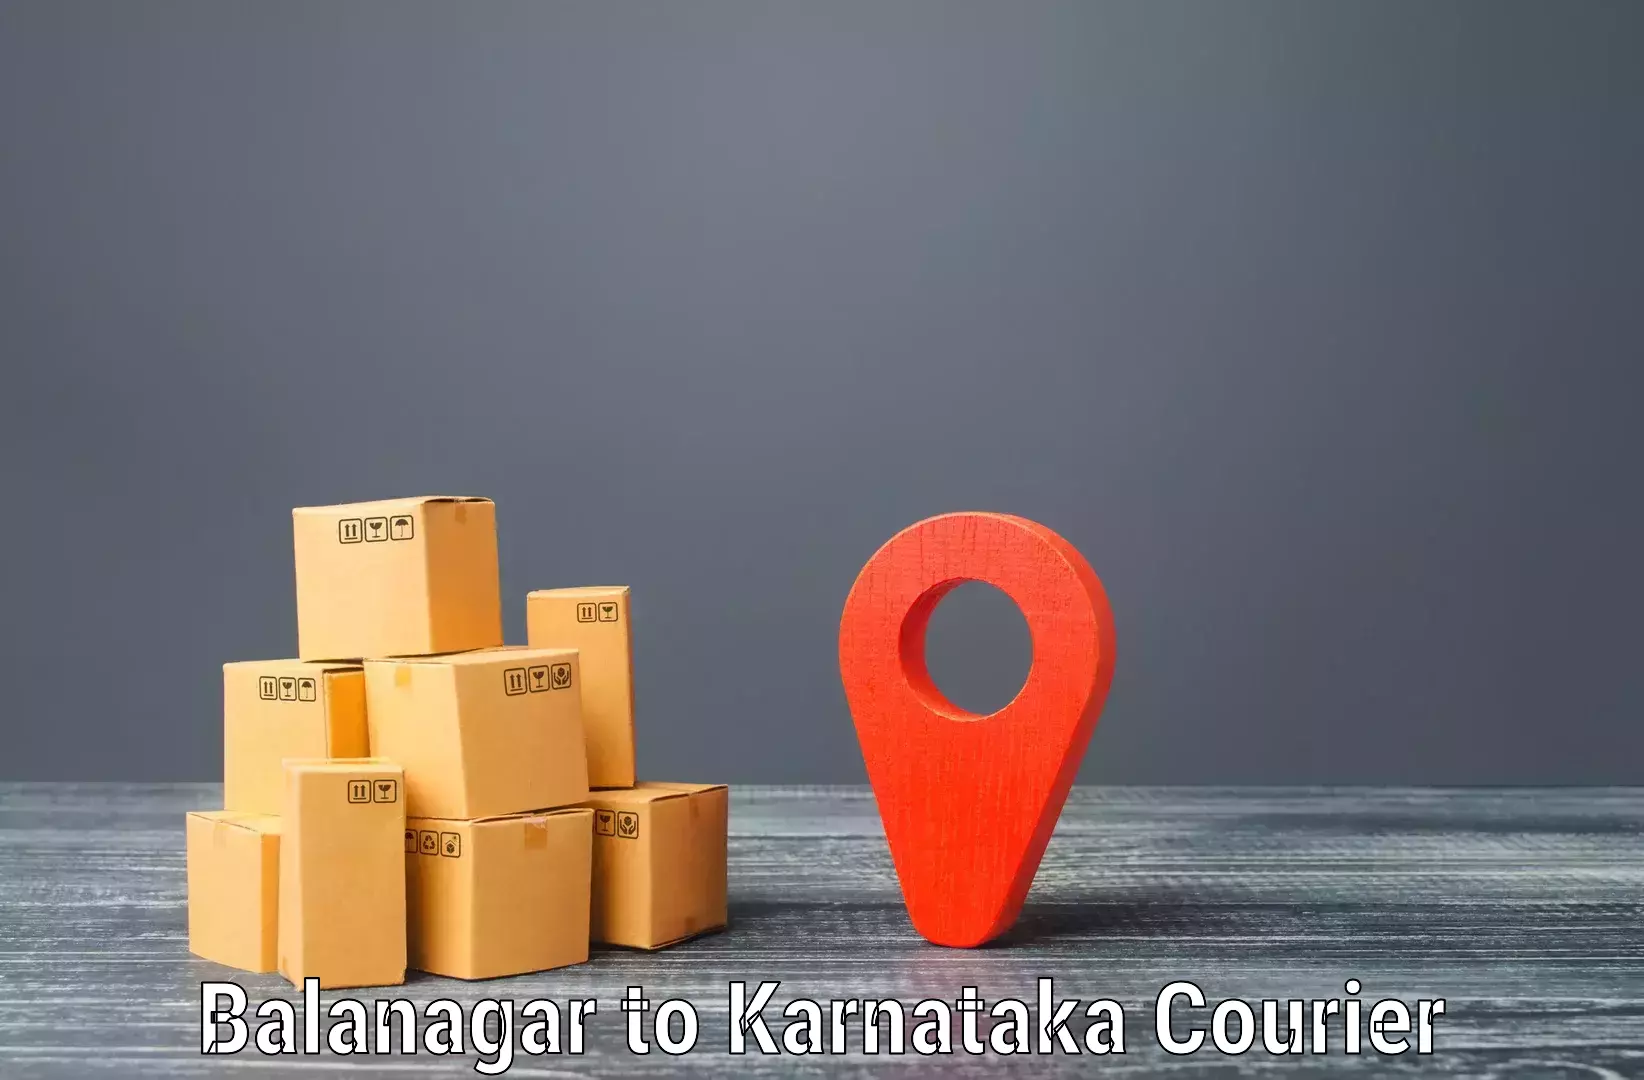 Efficient cargo services Balanagar to Anavatti